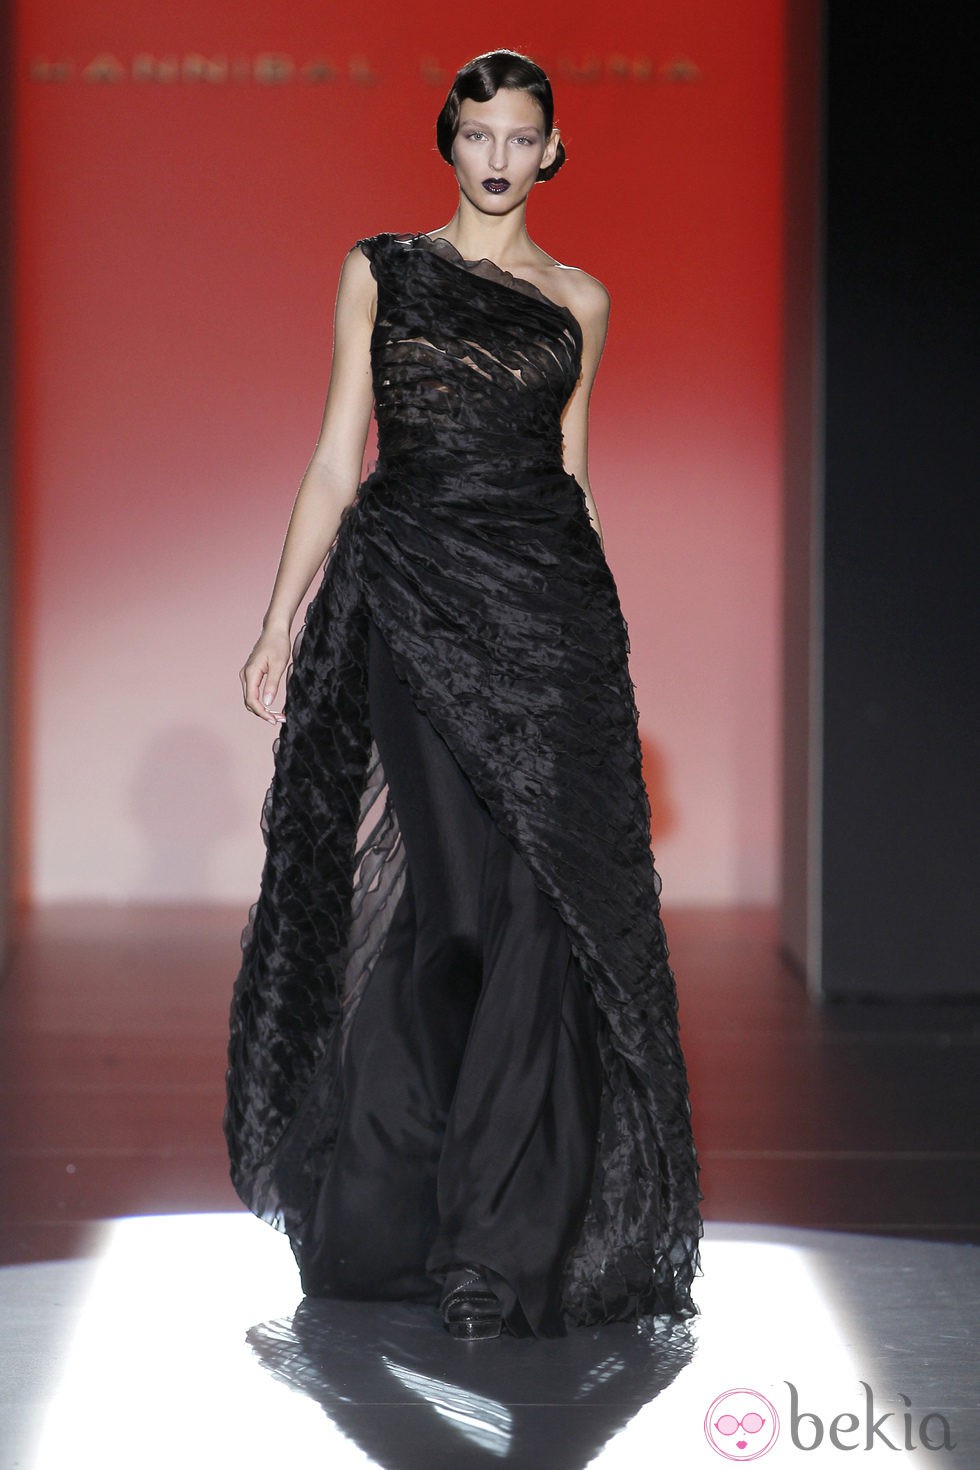 Vestido negro asimétrico de la colección otoño/invierno 2012/2013 de Hannibal Laguna